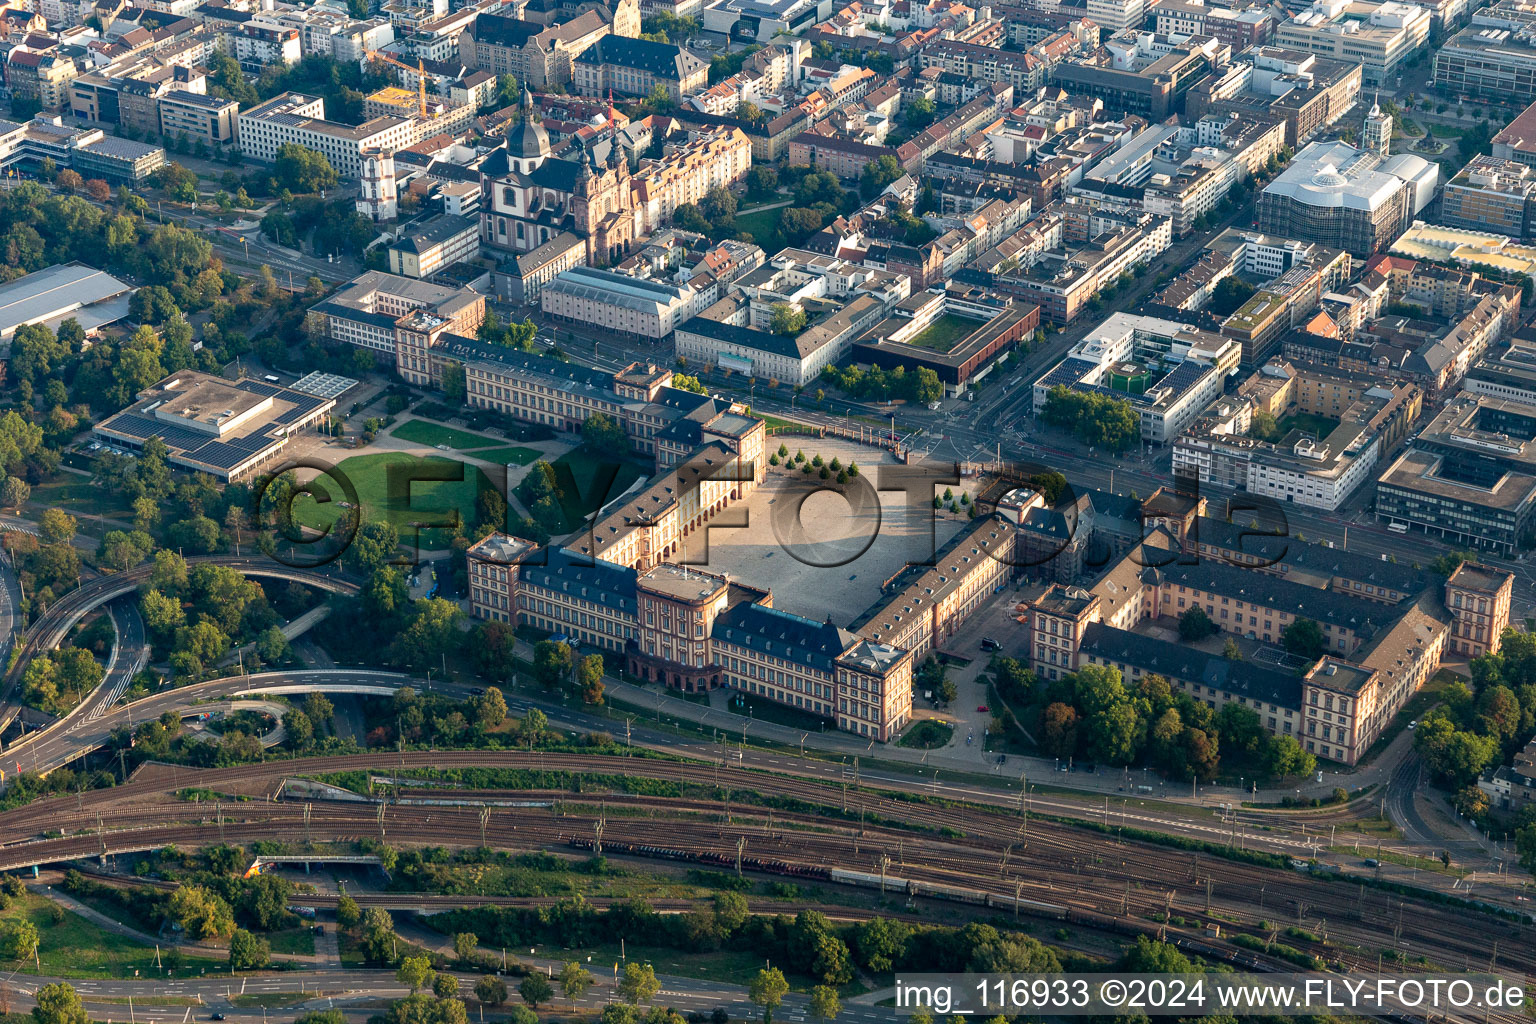 Luftbild von Barockschloss Mannheim in Mannheim im Ortsteil Innenstadt im Bundesland Baden-Württemberg, Deutschland